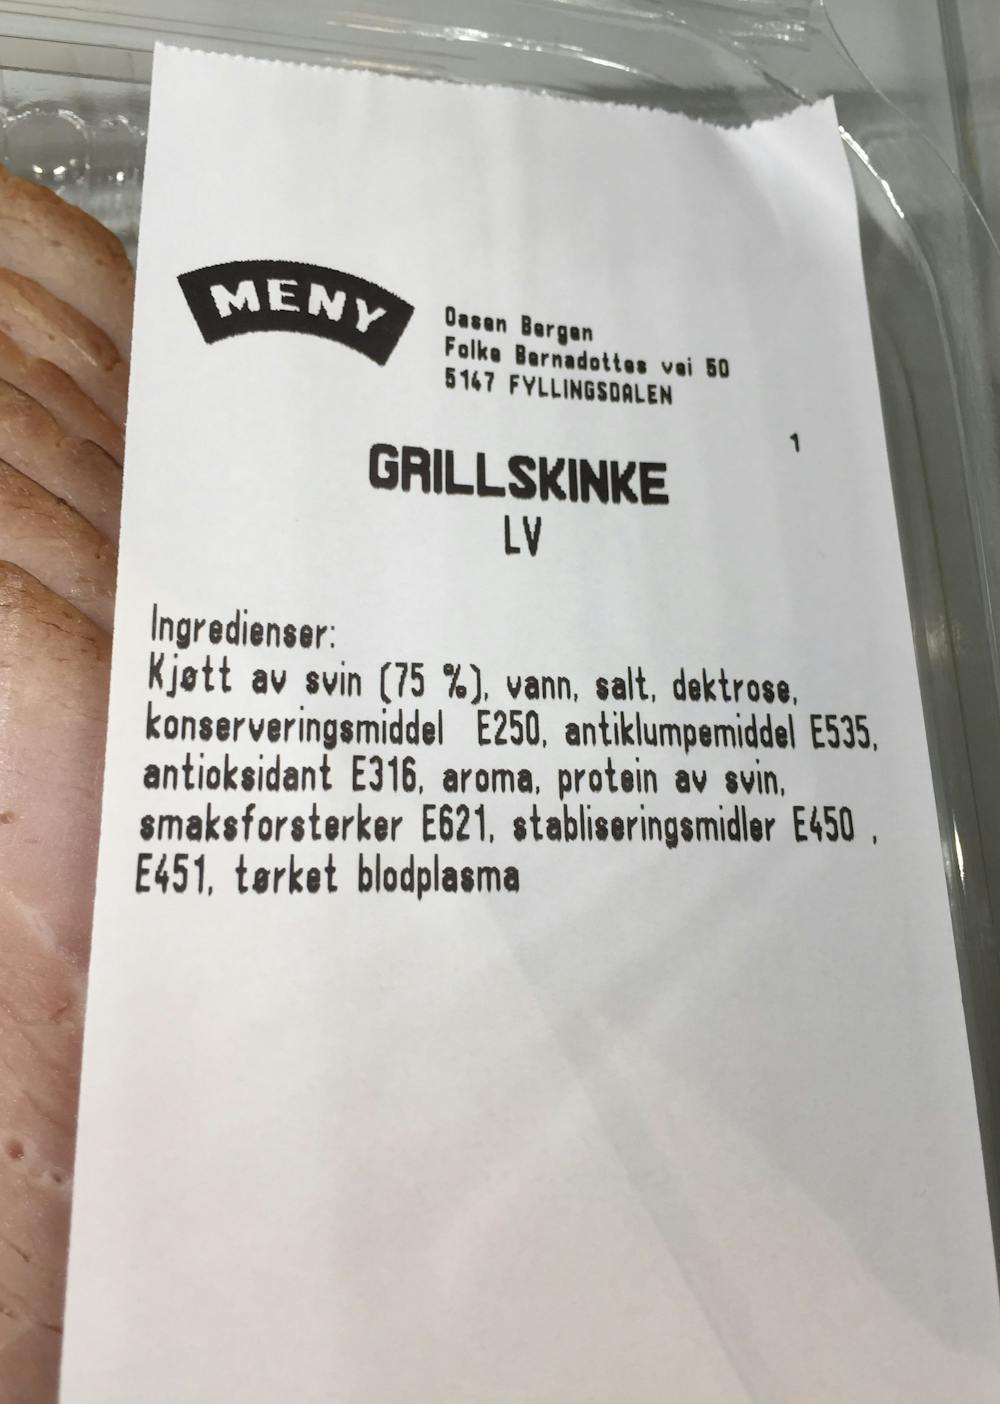 Ingrediensliste - Grillskinke, Meny